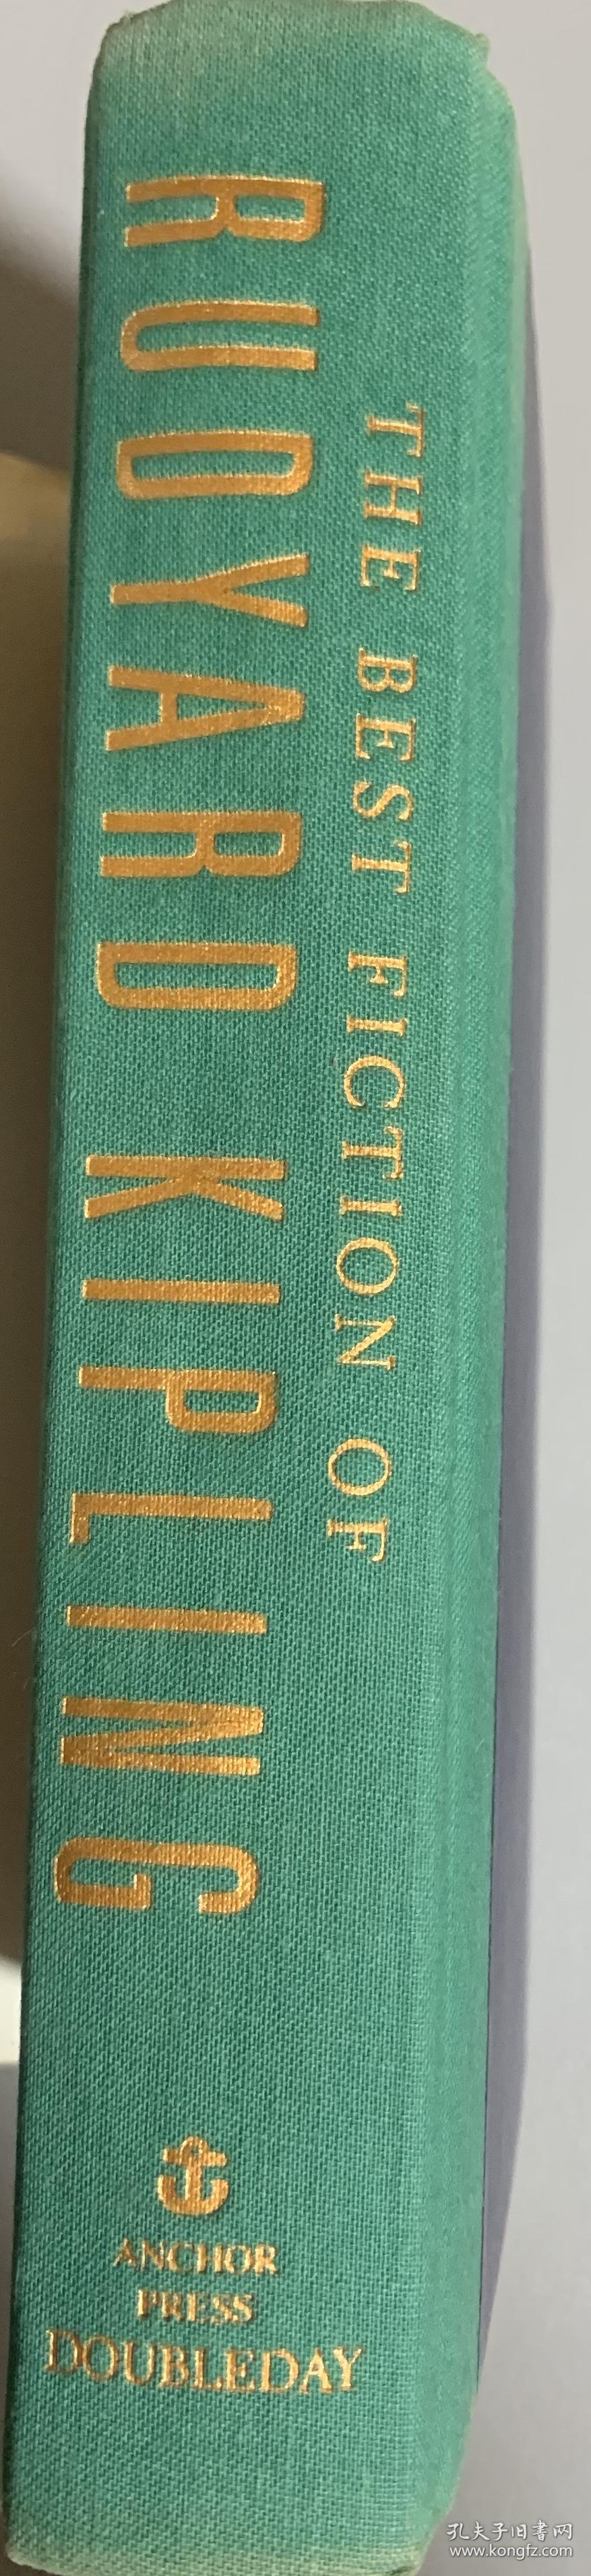 鲁迪亚德·吉卜林最佳小说精选集   布脊精装 书脊烫金  1989年第一版   毛姆称“吉卜林是永远无可超越的最伟大的小说家”